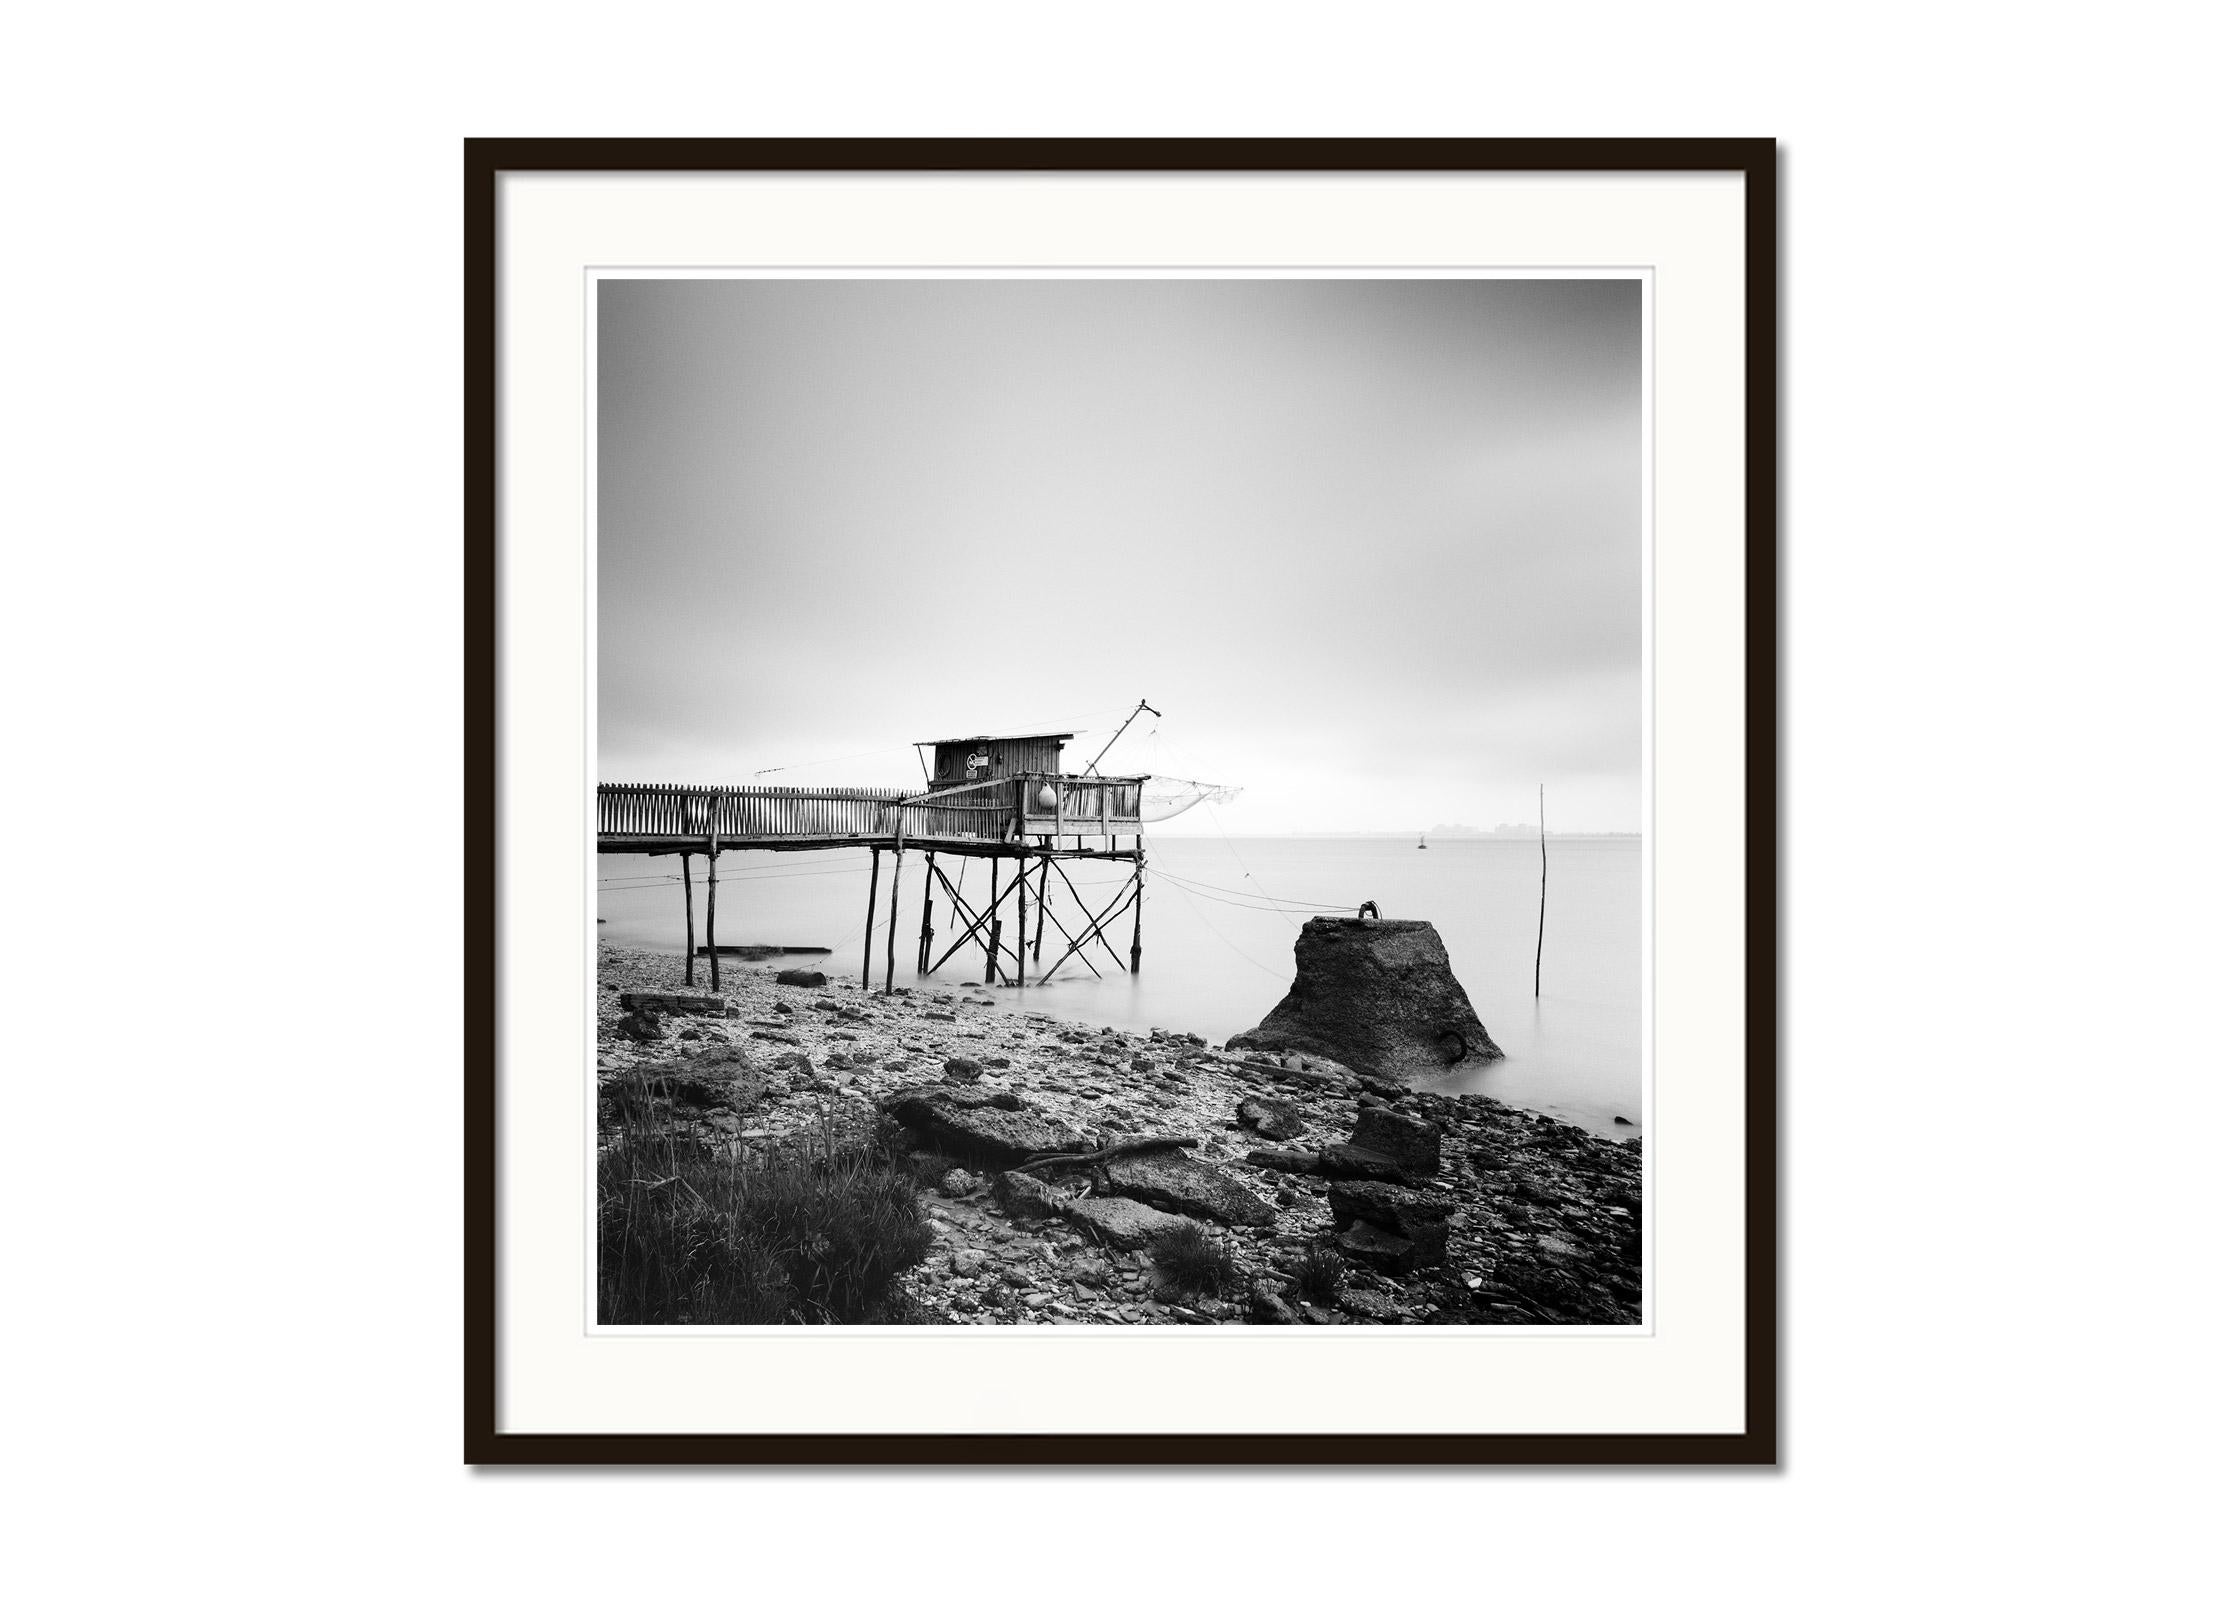 Stilt Haus, Fischen, Muschelfisch, Frankreich, Schwarz-Weiß-Fotografie-Landschaft (Grau), Landscape Photograph, von Gerald Berghammer